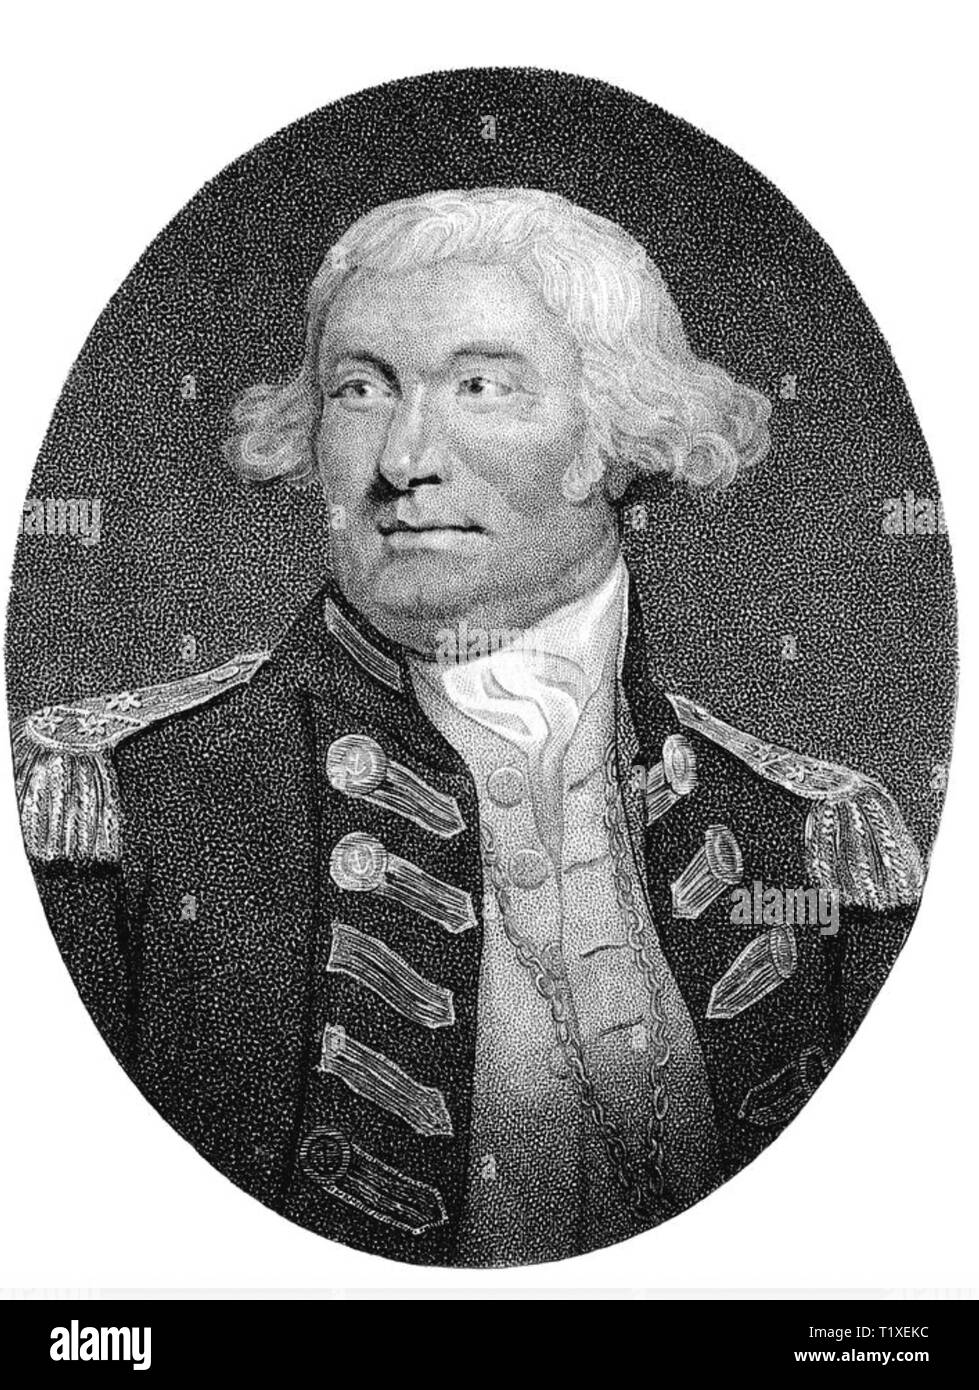 THOMAS GRAVES (c 1747-1814) officier de la Royal Navy Banque D'Images